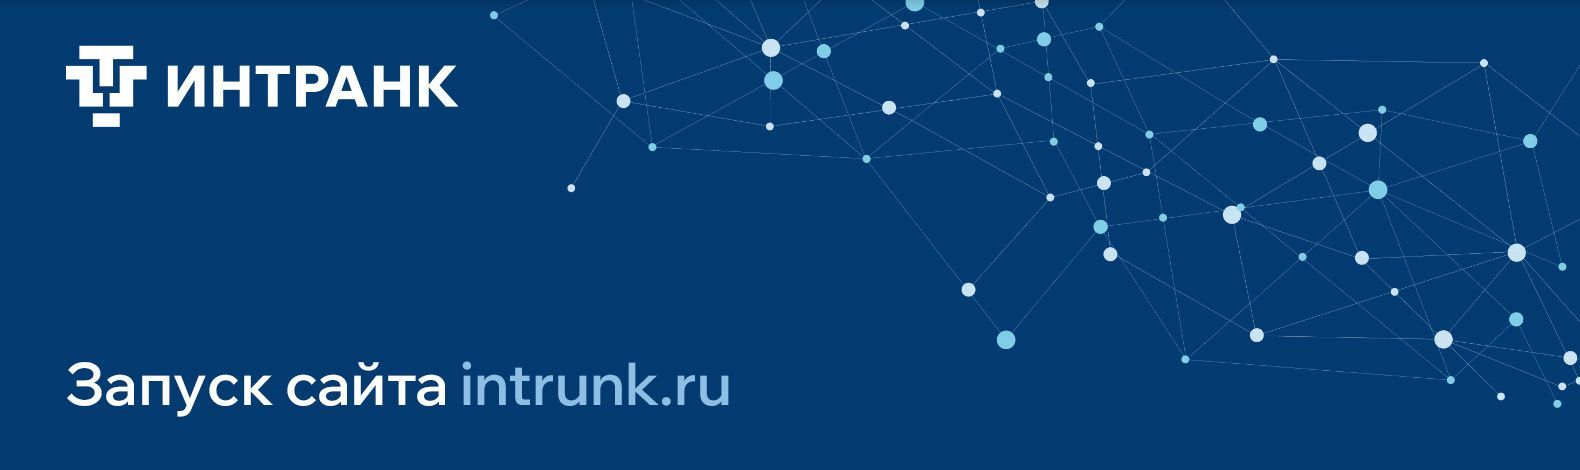 Мы рады сообщить о запуске сайте intrunk.ru